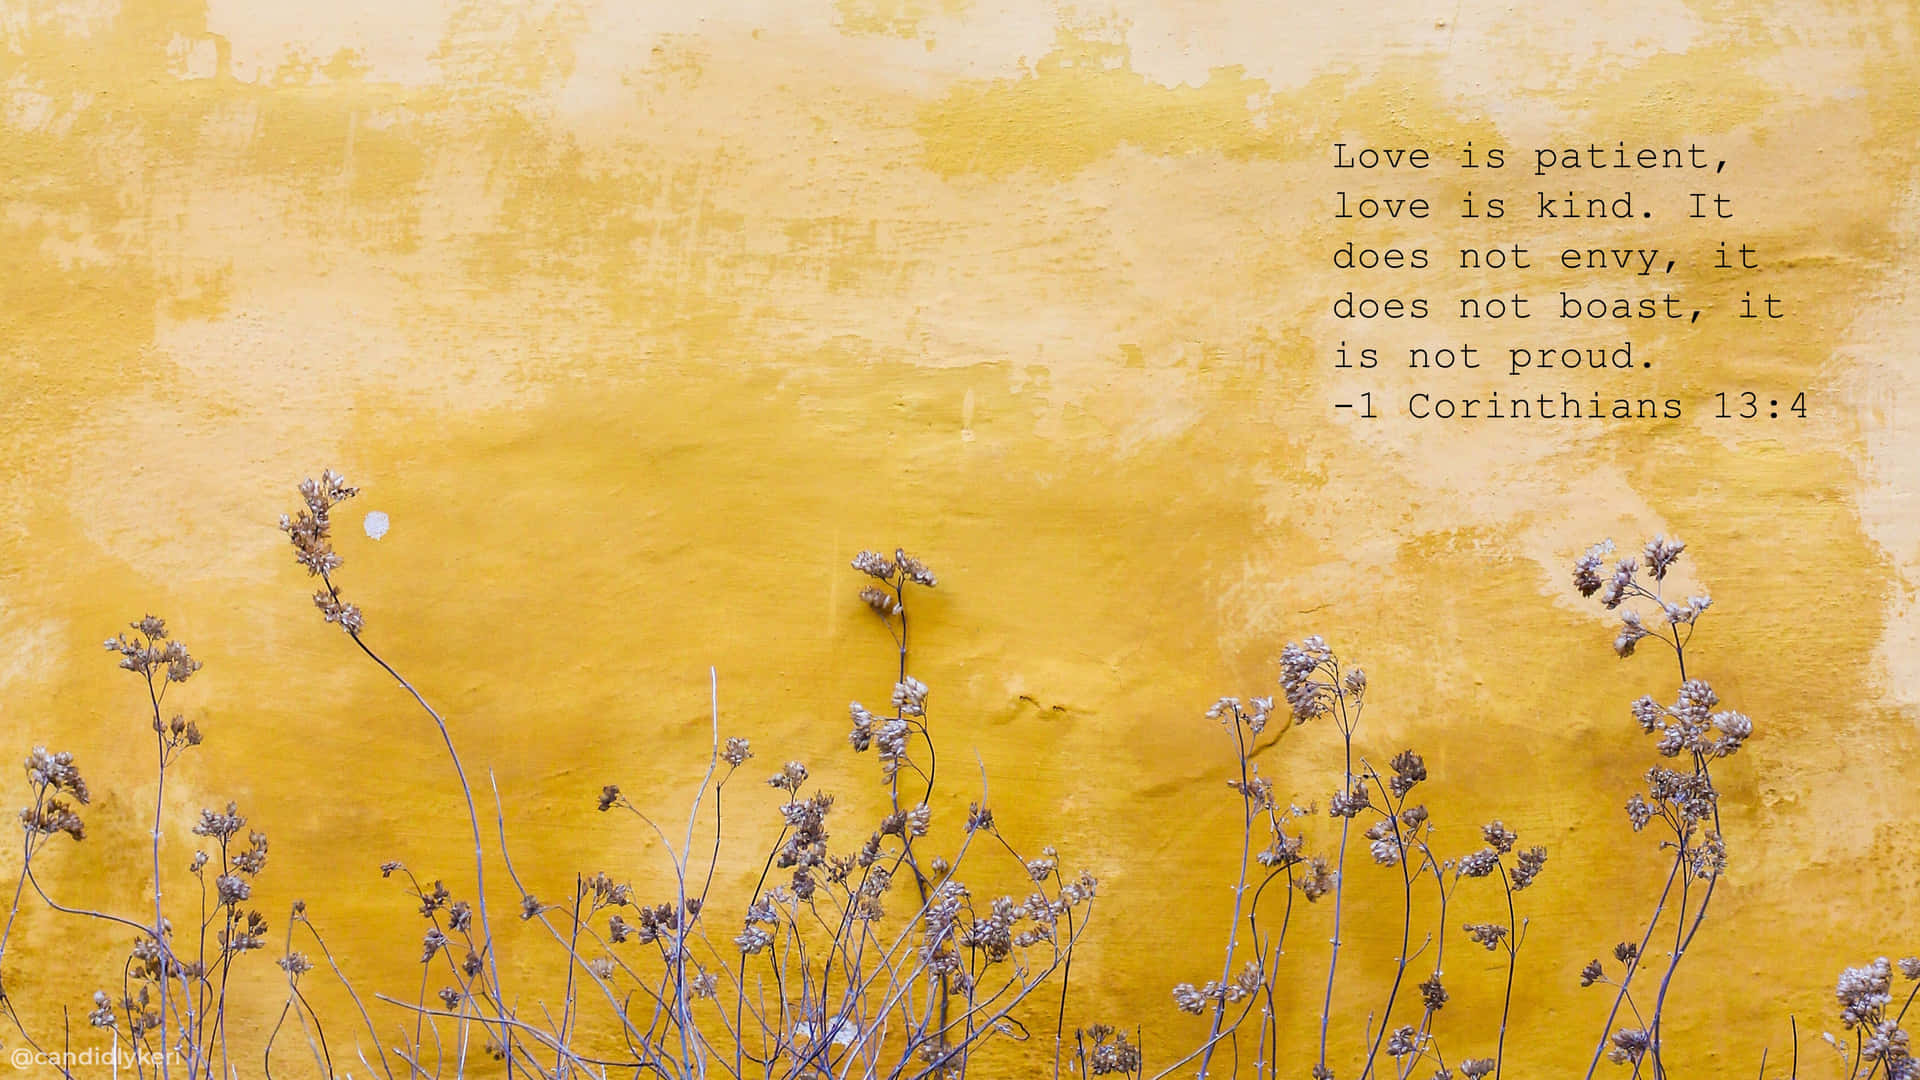 En gul væg med et citat der siger 